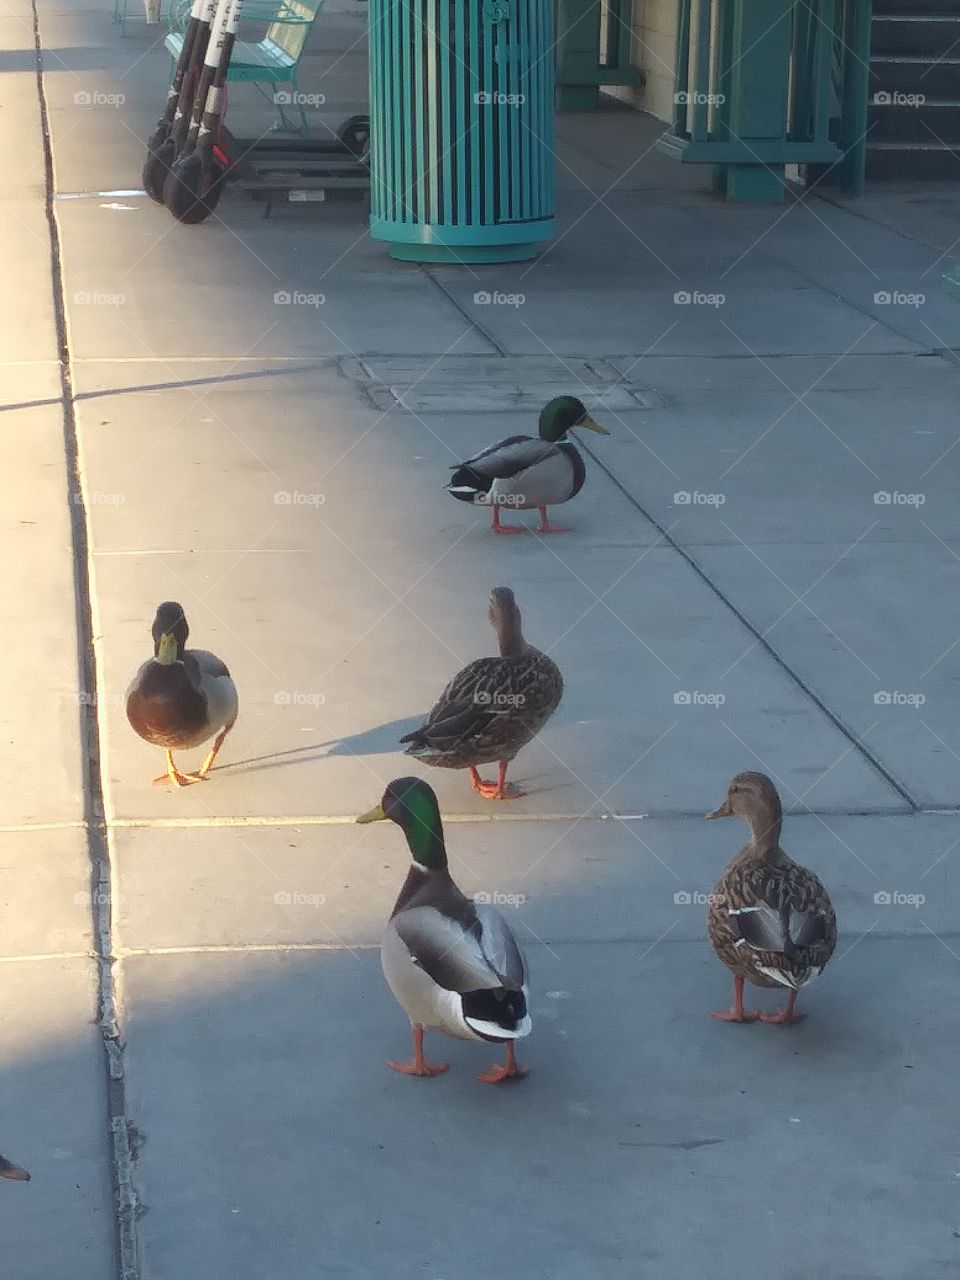 quack attack